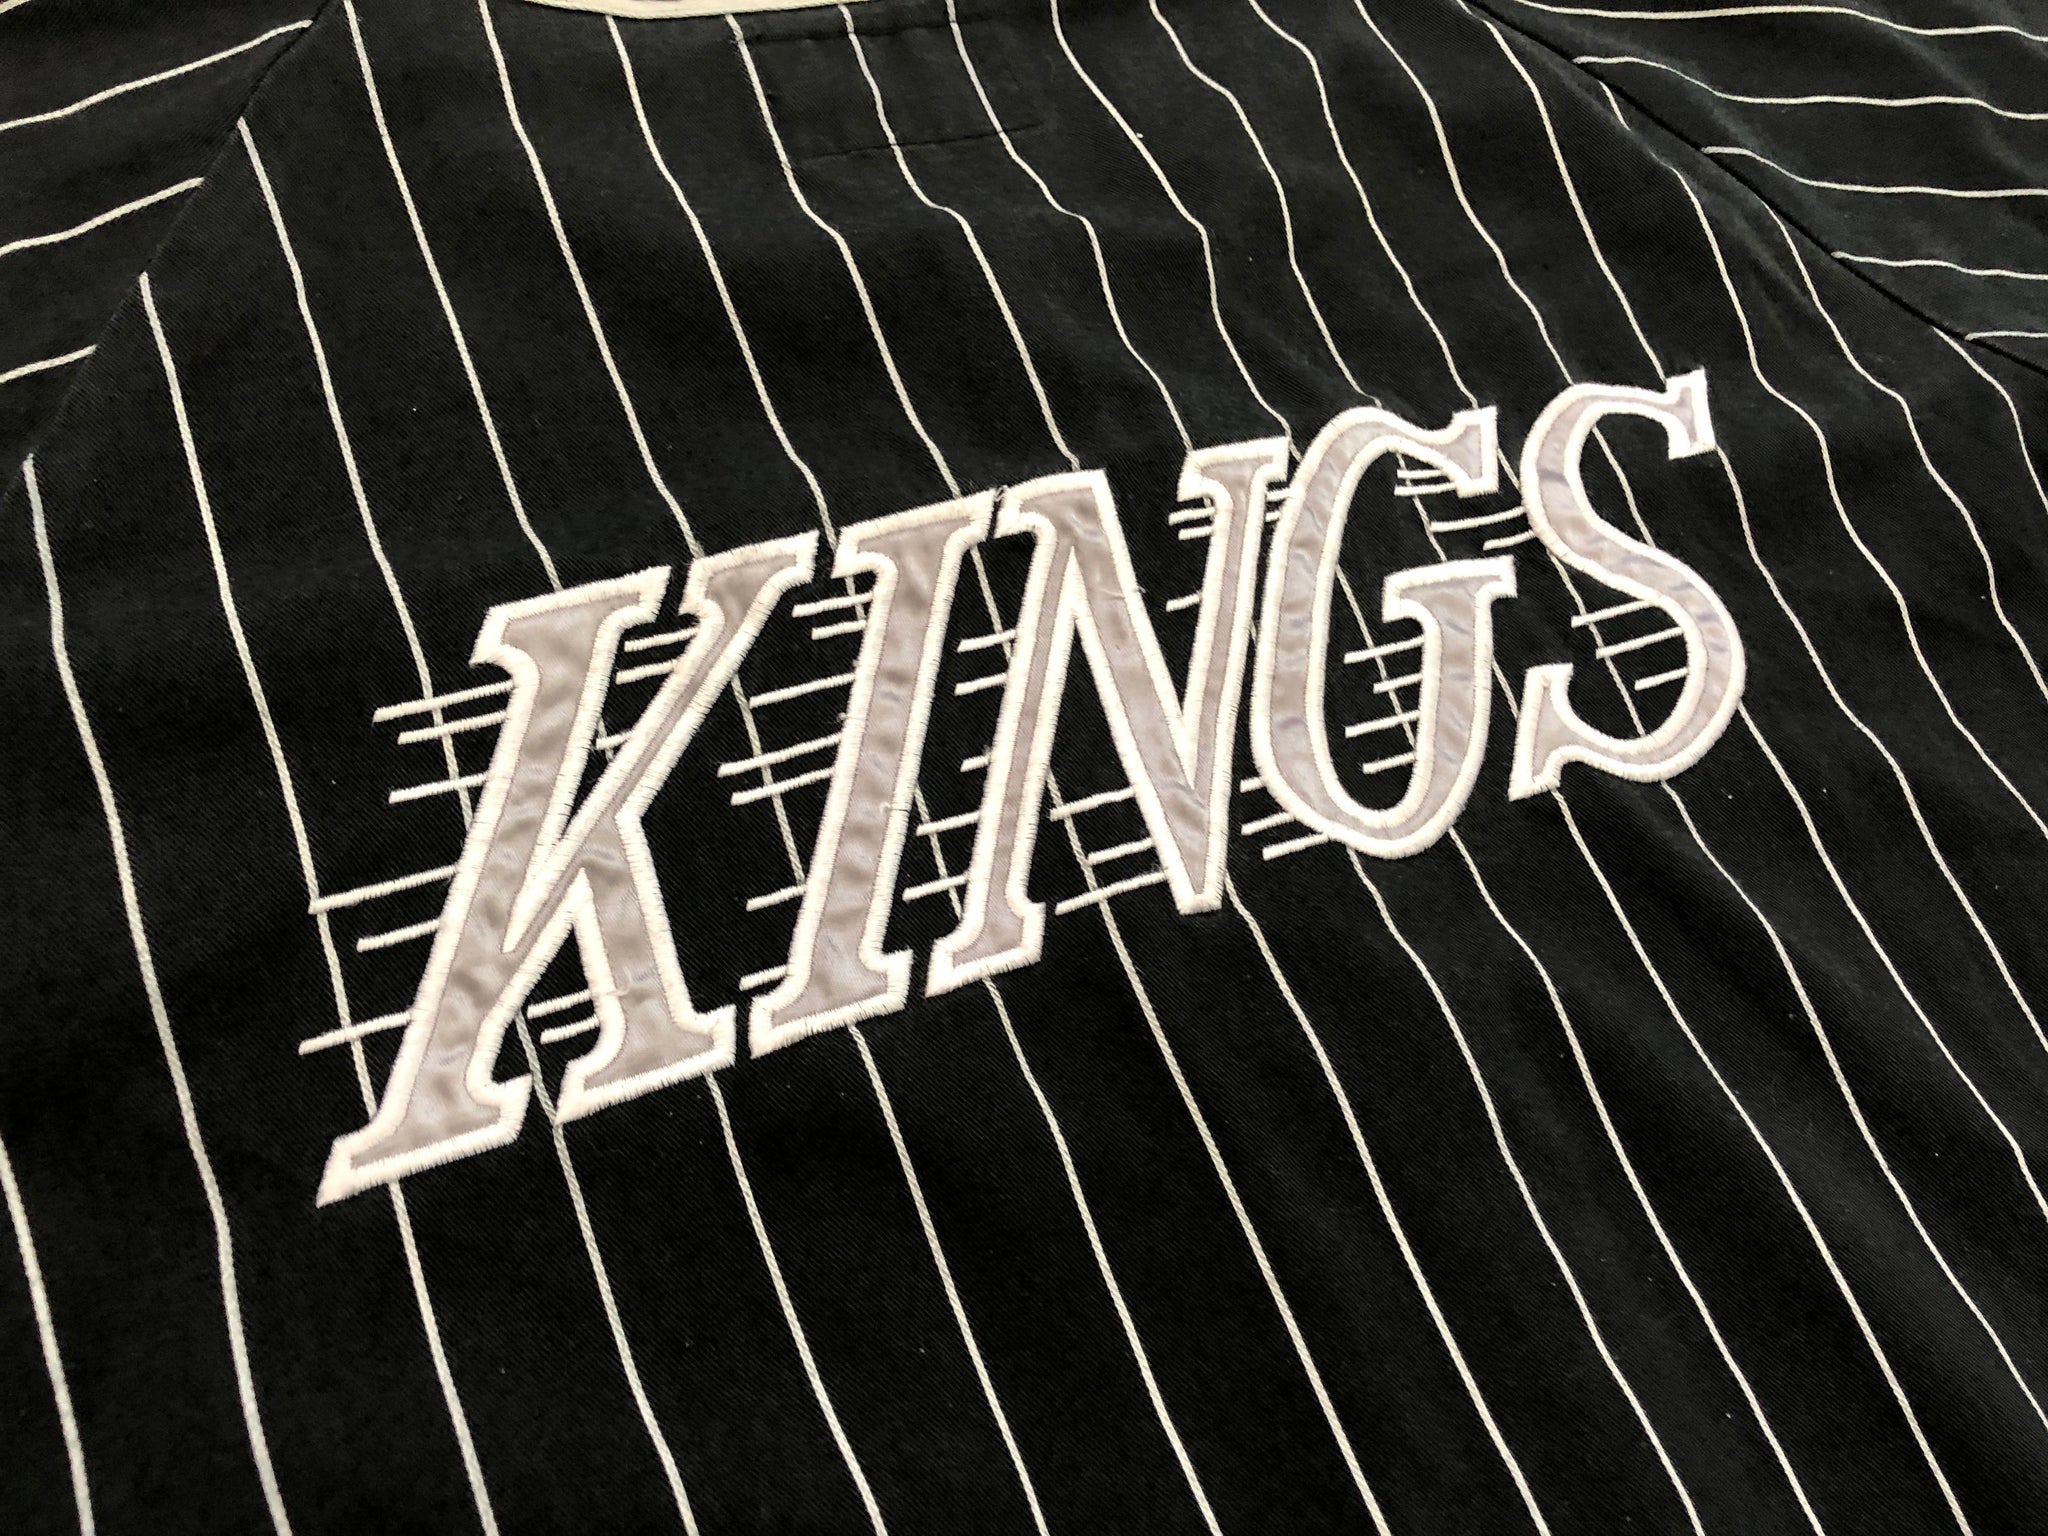 NHL Starter LA Kings Hockey Button up Baseball Jersey Vintage